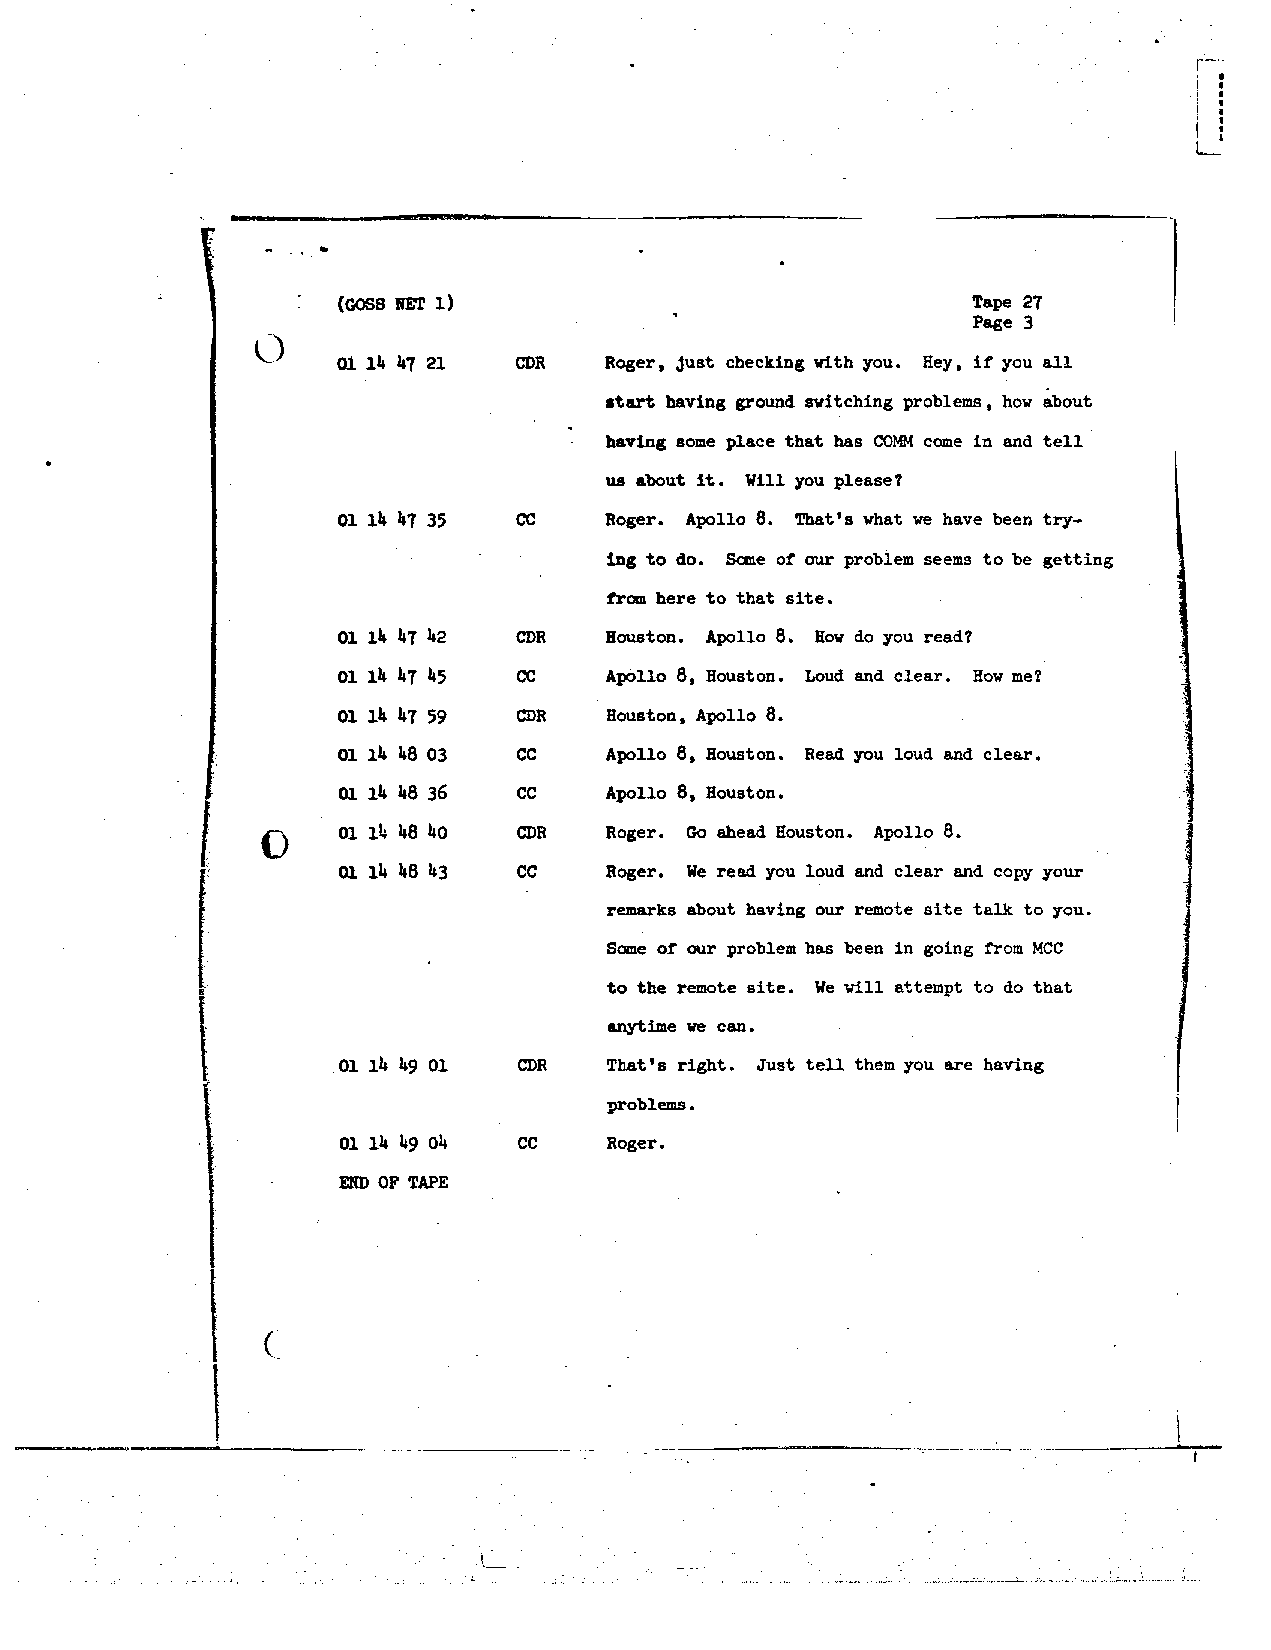 Page 221 of Apollo 8’s original transcript